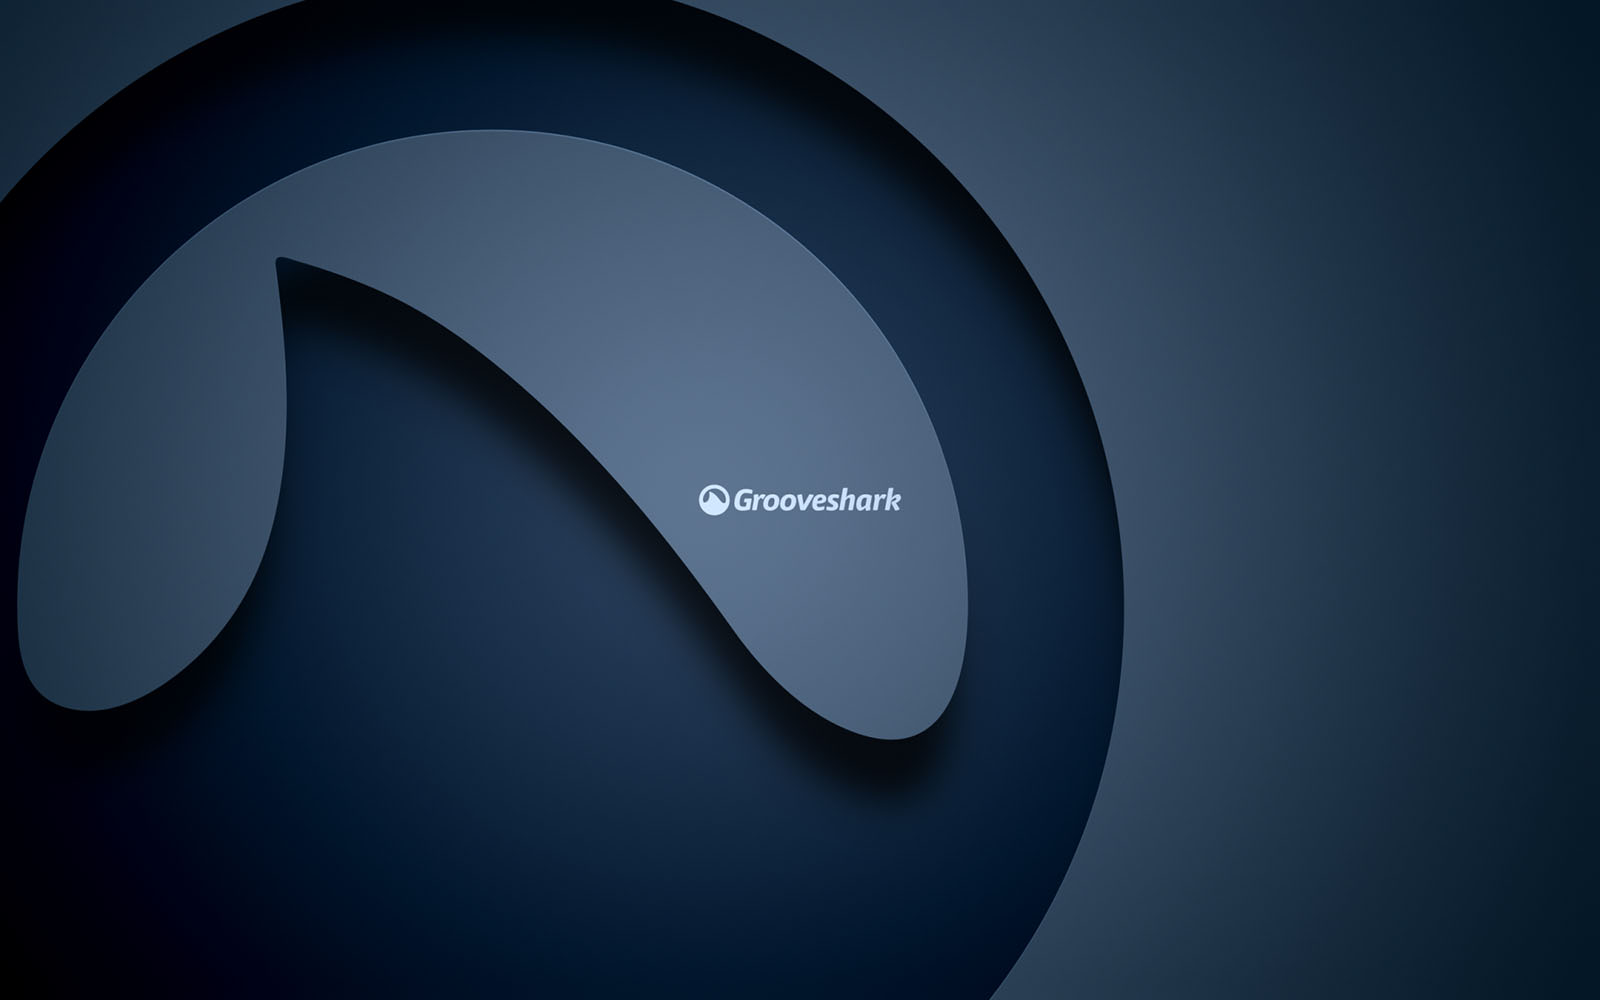 Grooveshark Grooveshark网站 避风港原则